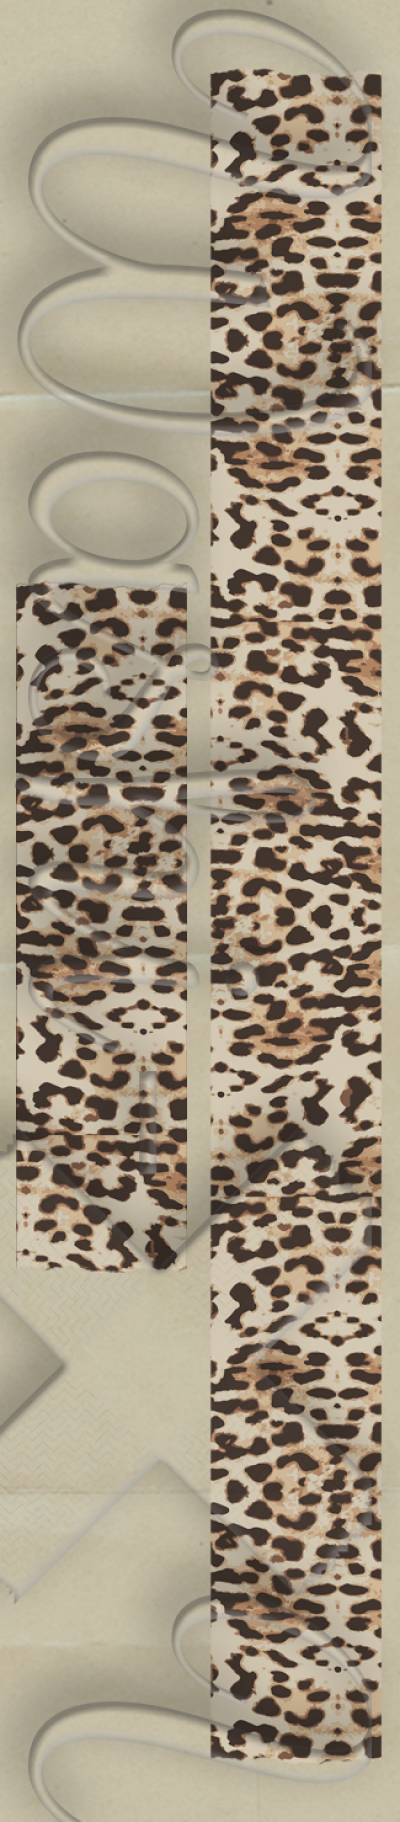 Washi-X Washi Tape Leopard patterned washi tape